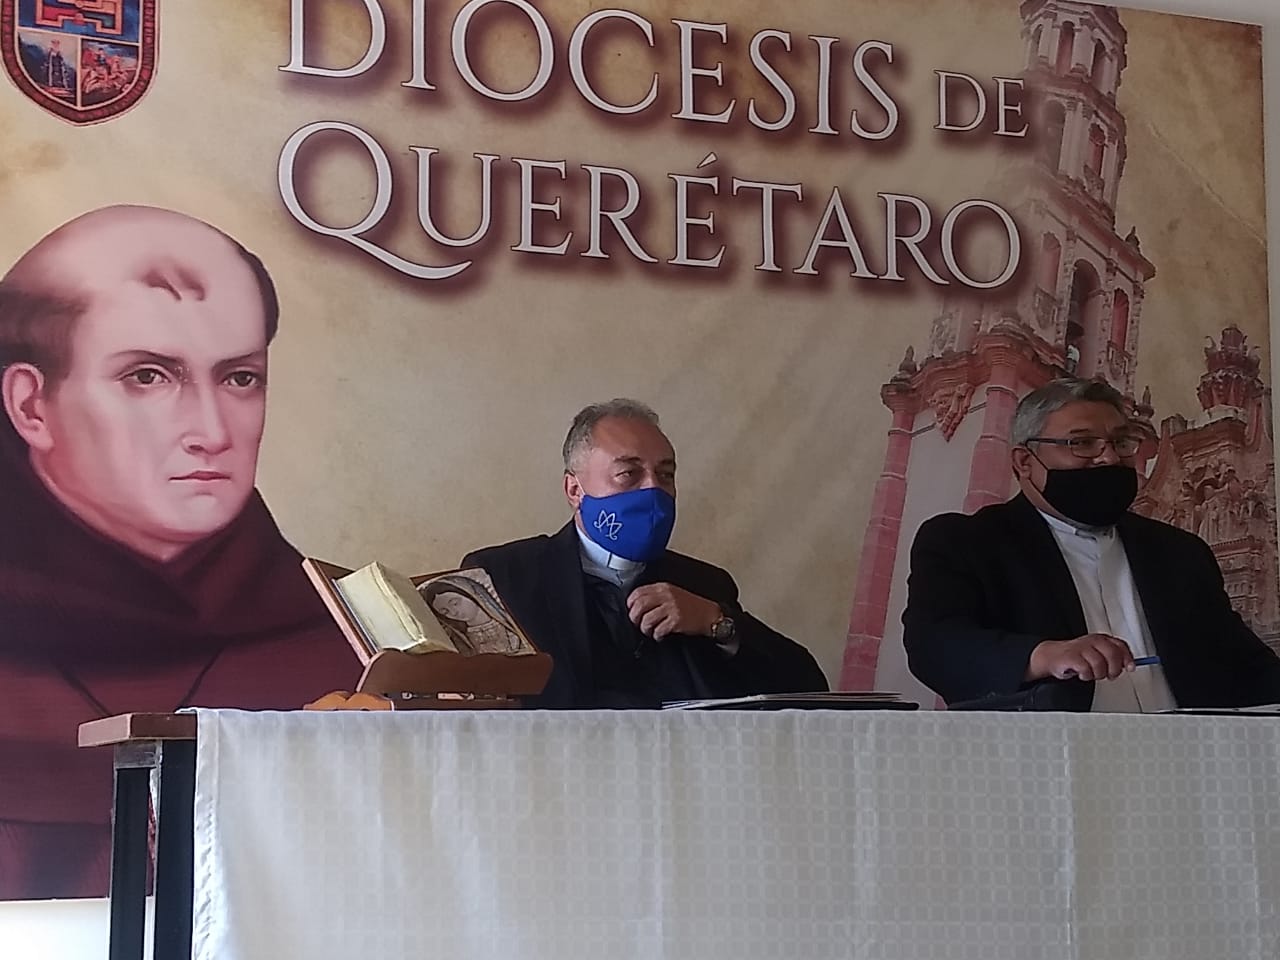 Sufren sacerdotes queretanos intentos de extorsión: Martín Lara Becerril. –  El Queretano